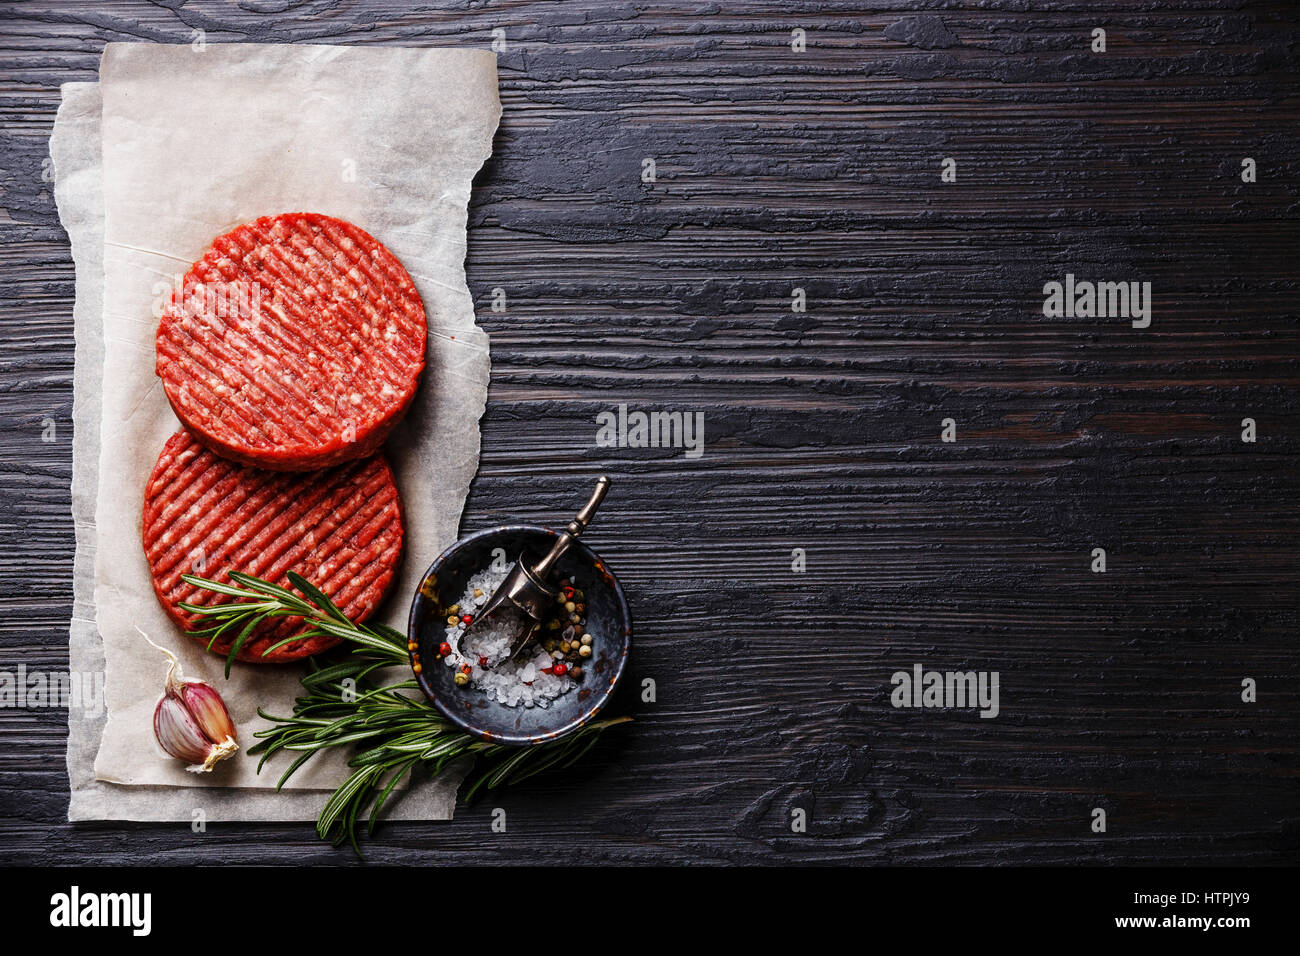 La viande de boeuf haché cru Burger steak escalopes et les assaisonnements sur fond de bois brûlé noir copy space Banque D'Images